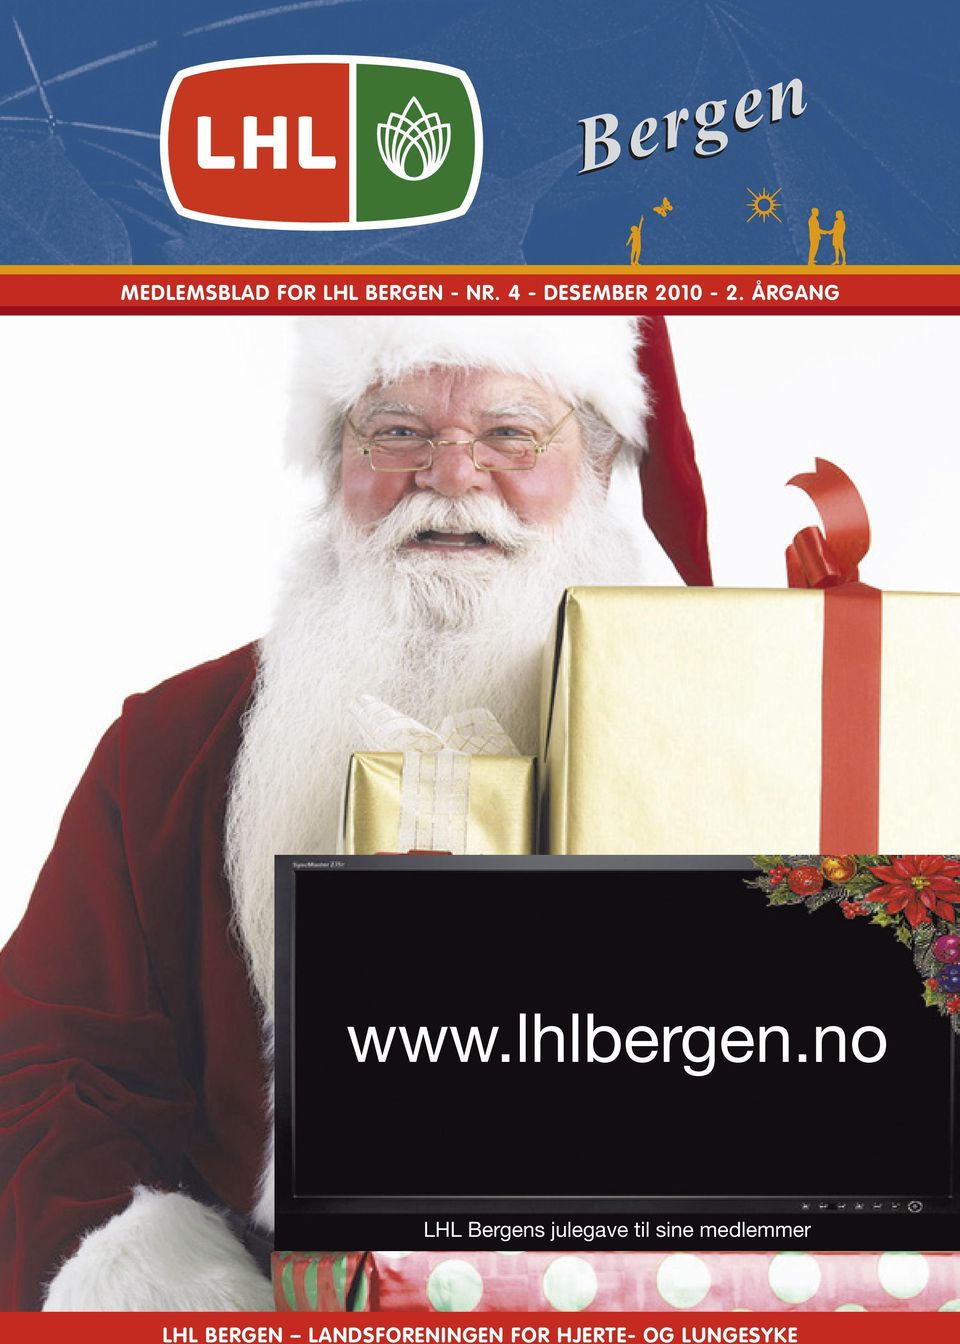 no LHL Bergens julegave til sine medlemmer